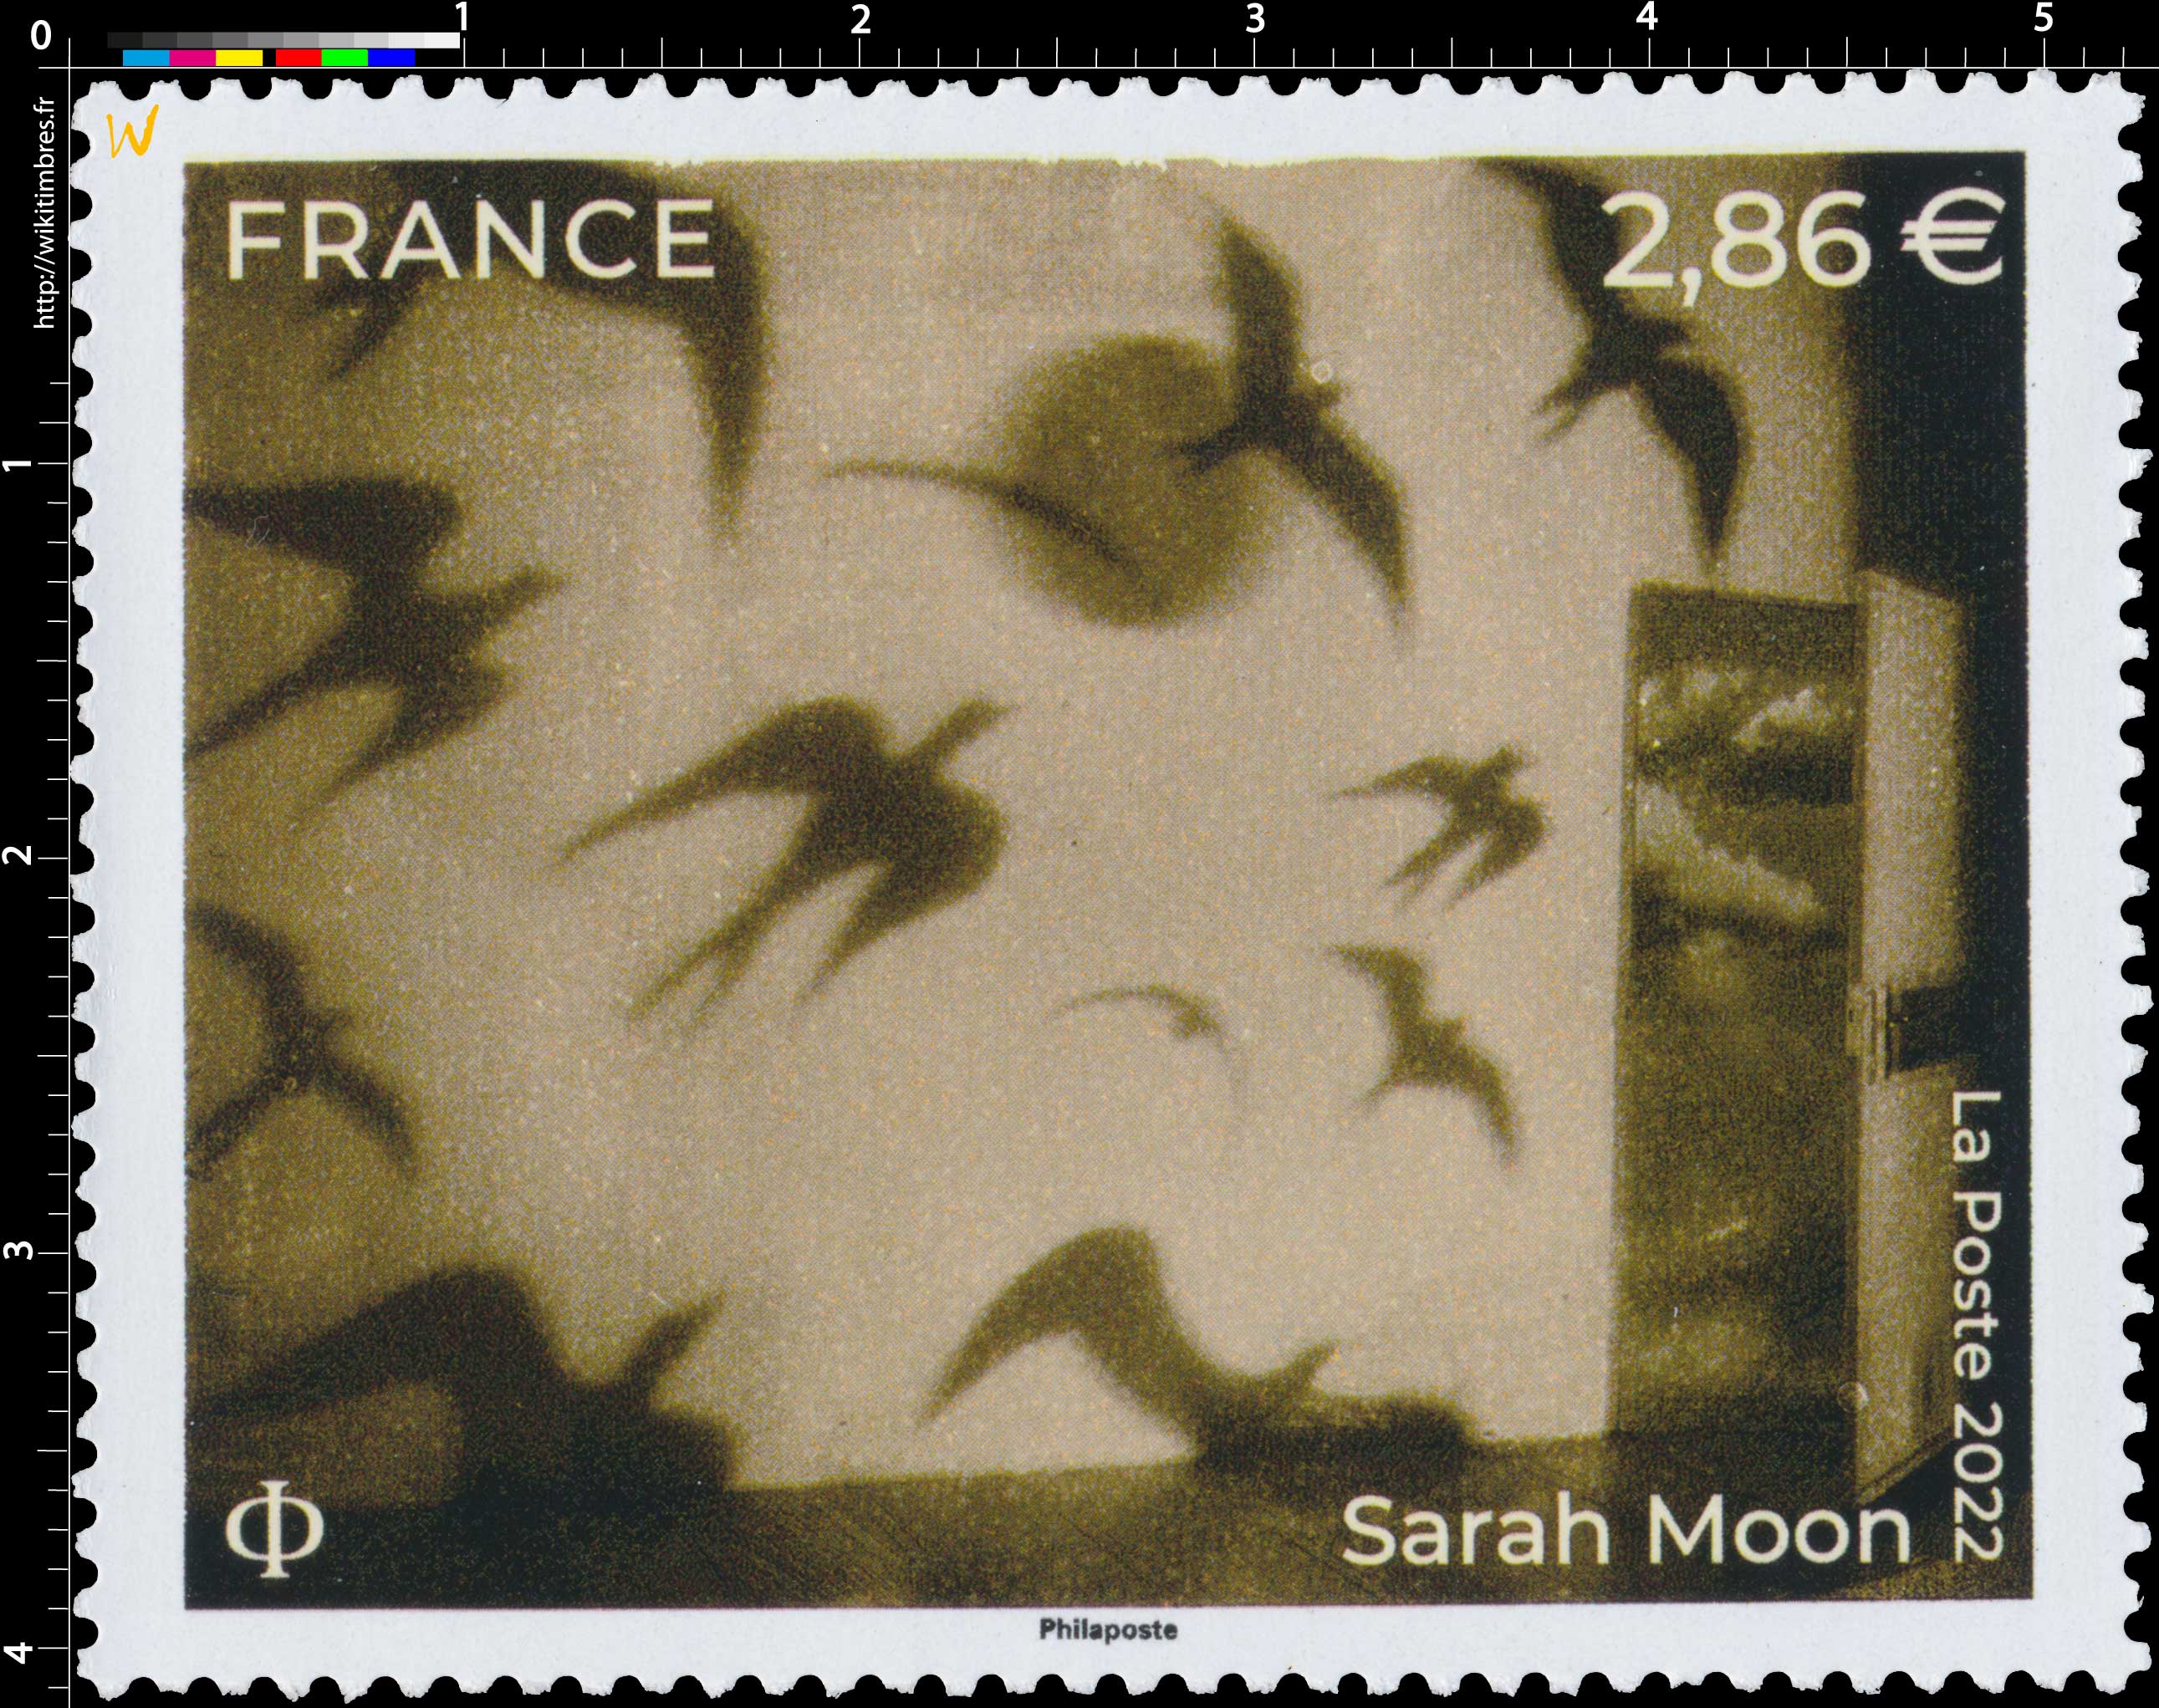 2022 Sarah Moon